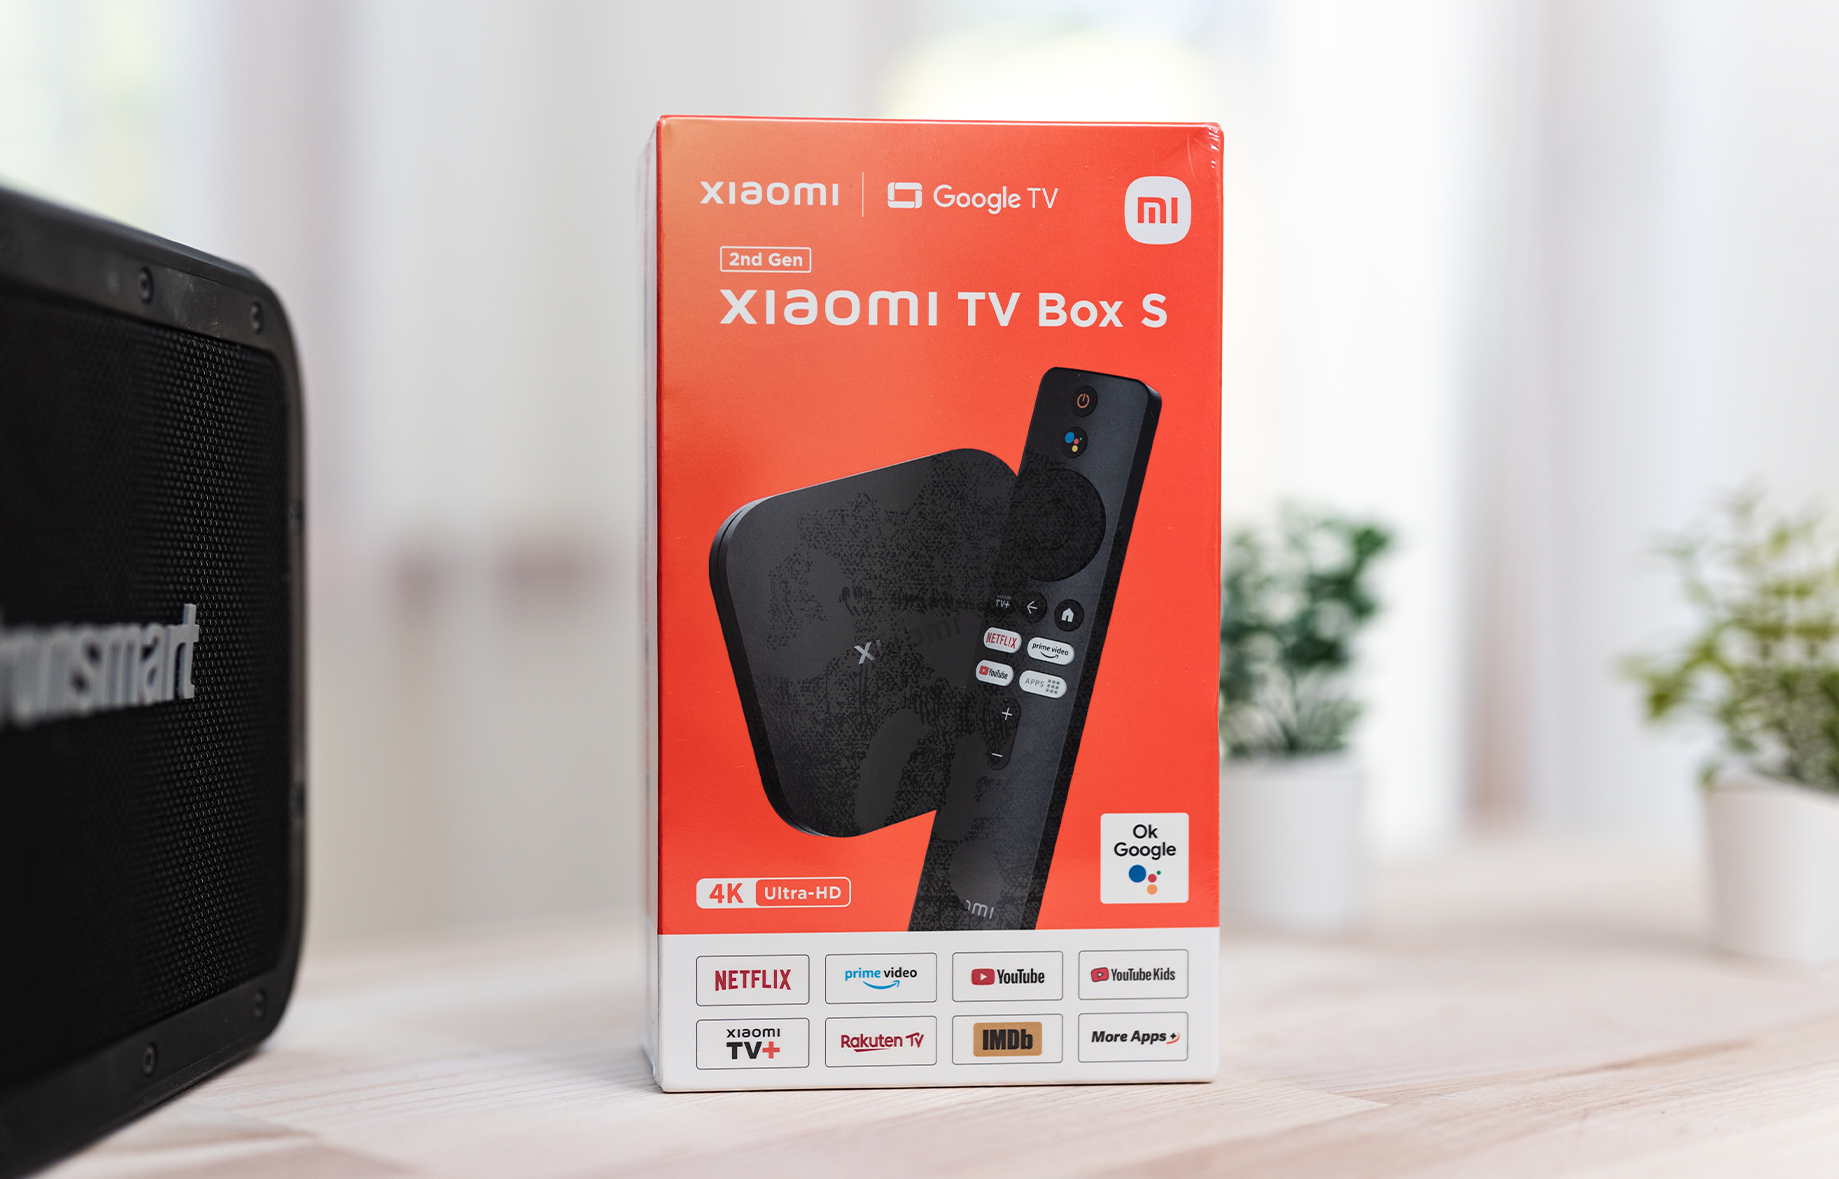 Xiaomi TV Box S (2nd Gen) with Google TV — Niuxtech